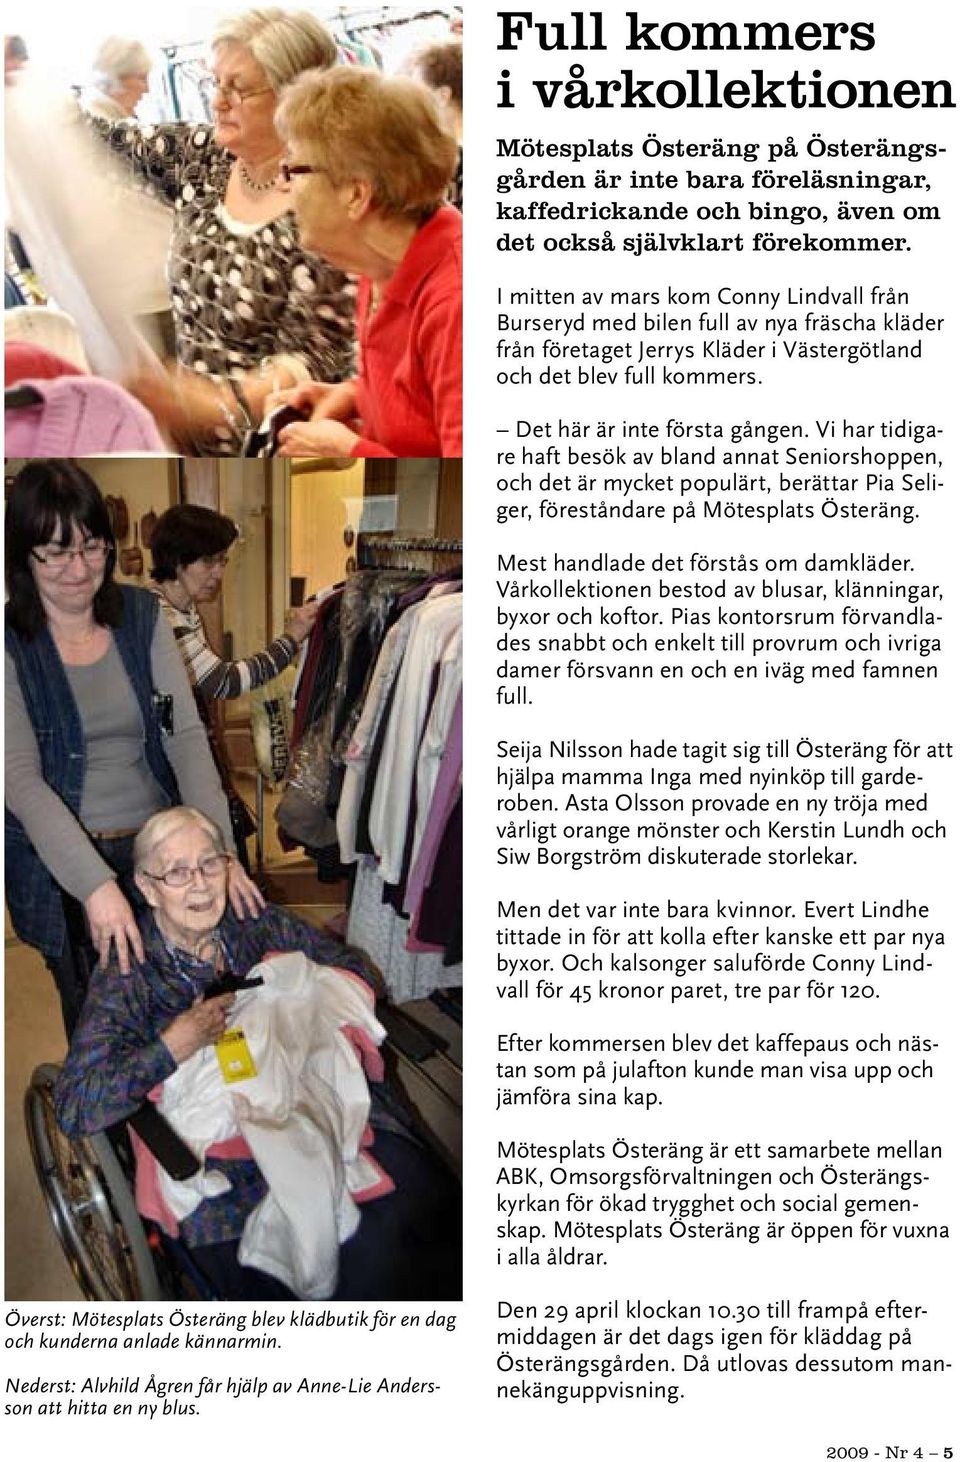 Vi har tidigare haft besök av bland annat Seniorshoppen, och det är mycket populärt, berättar Pia Seliger, föreståndare på Mötesplats Österäng. Mest handlade det förstås om damkläder.